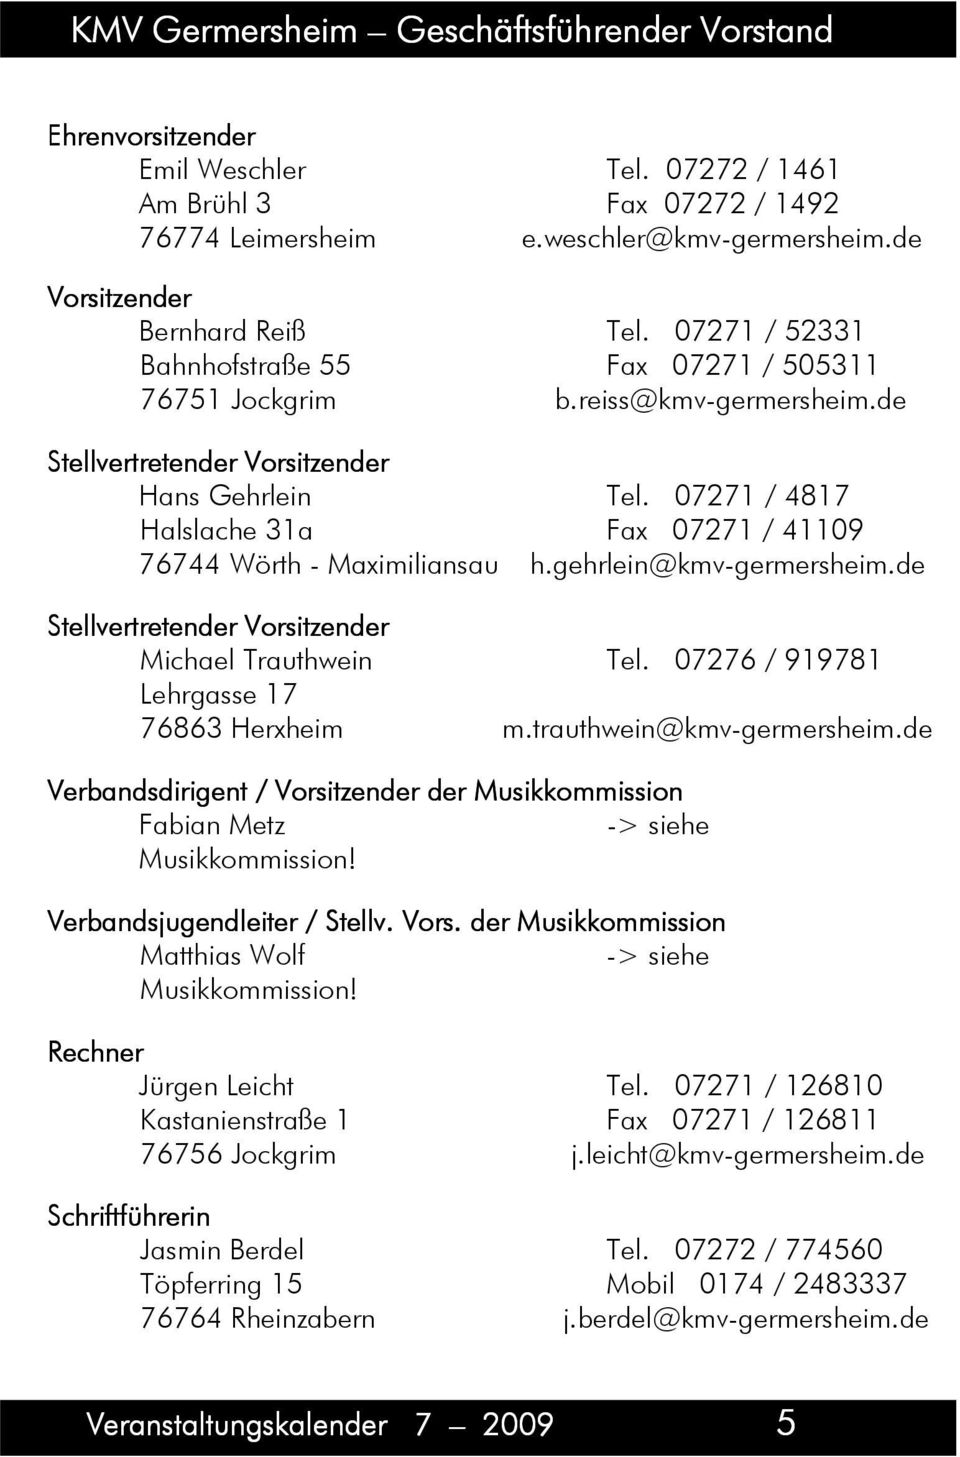 07271 / 4817 Halslache 31a Fax 07271 / 41109 76744 Wörth - Maximiliansau h.gehrlein@kmv-germersheim.de Stellvertretender Vorsitzender Michael Trauthwein Tel.